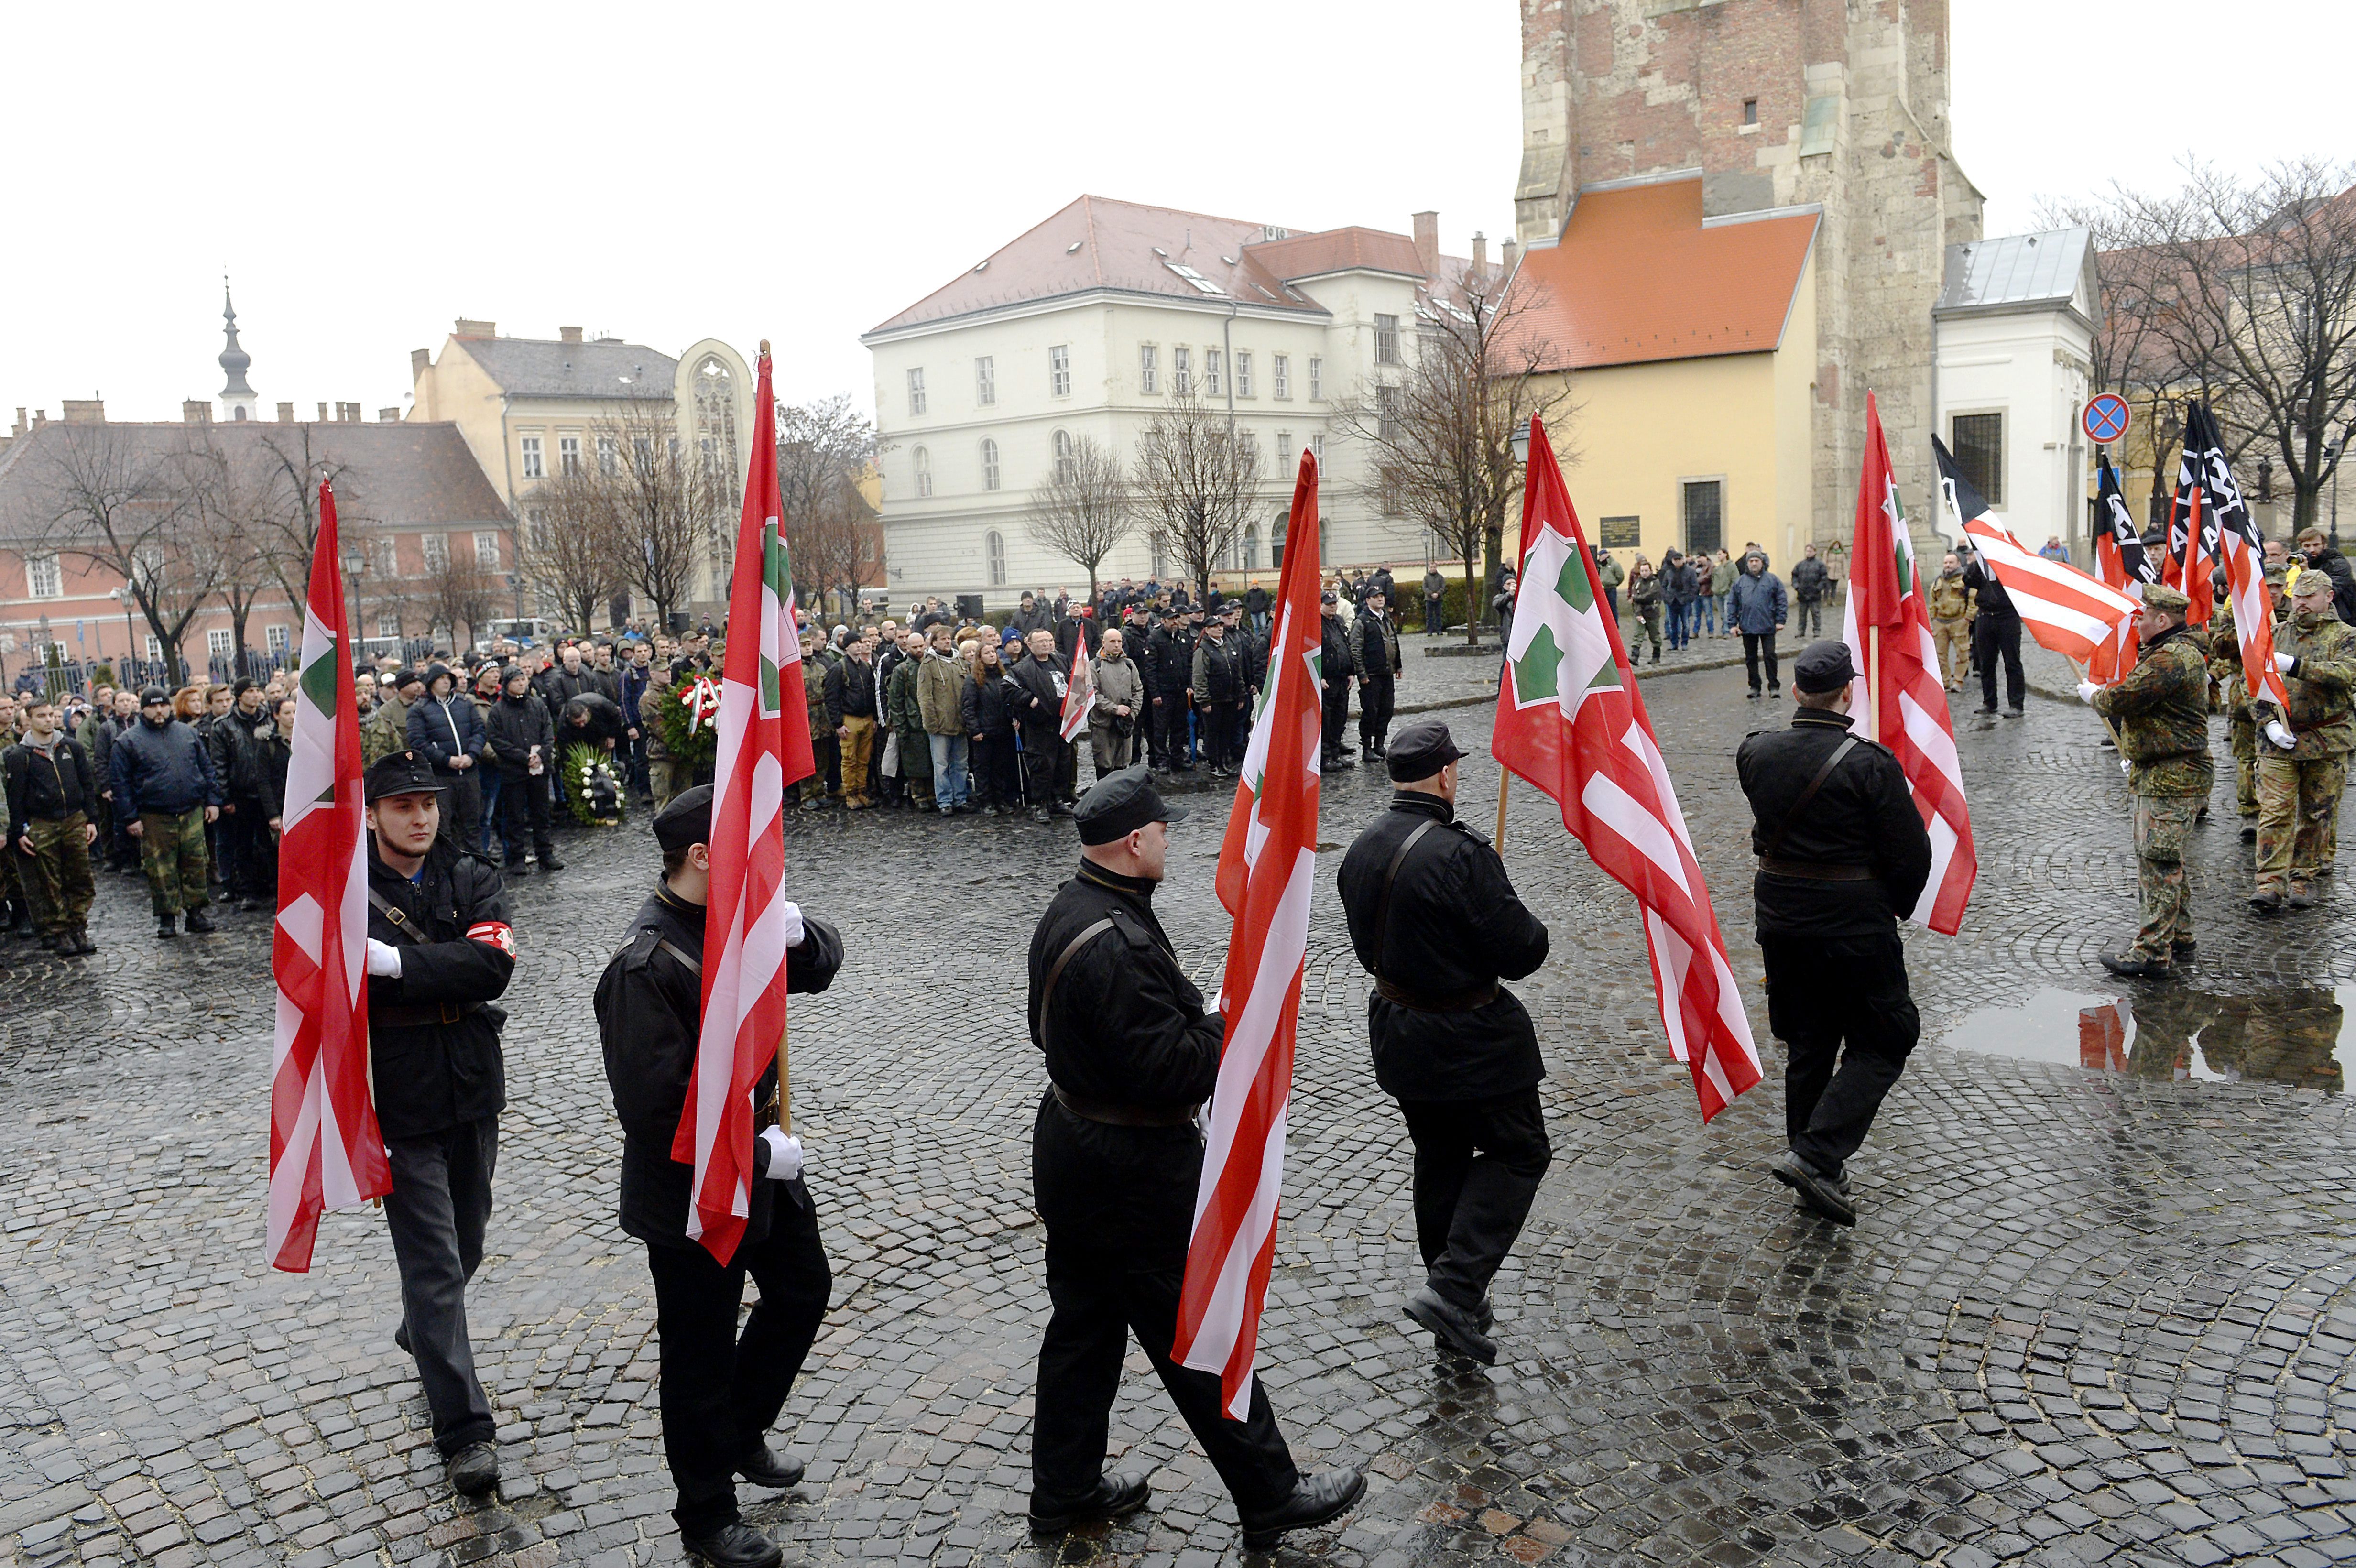 Náci és nyilas egyenruhákban tartottak kitörés napi megemlékezést a Várban a neonácik